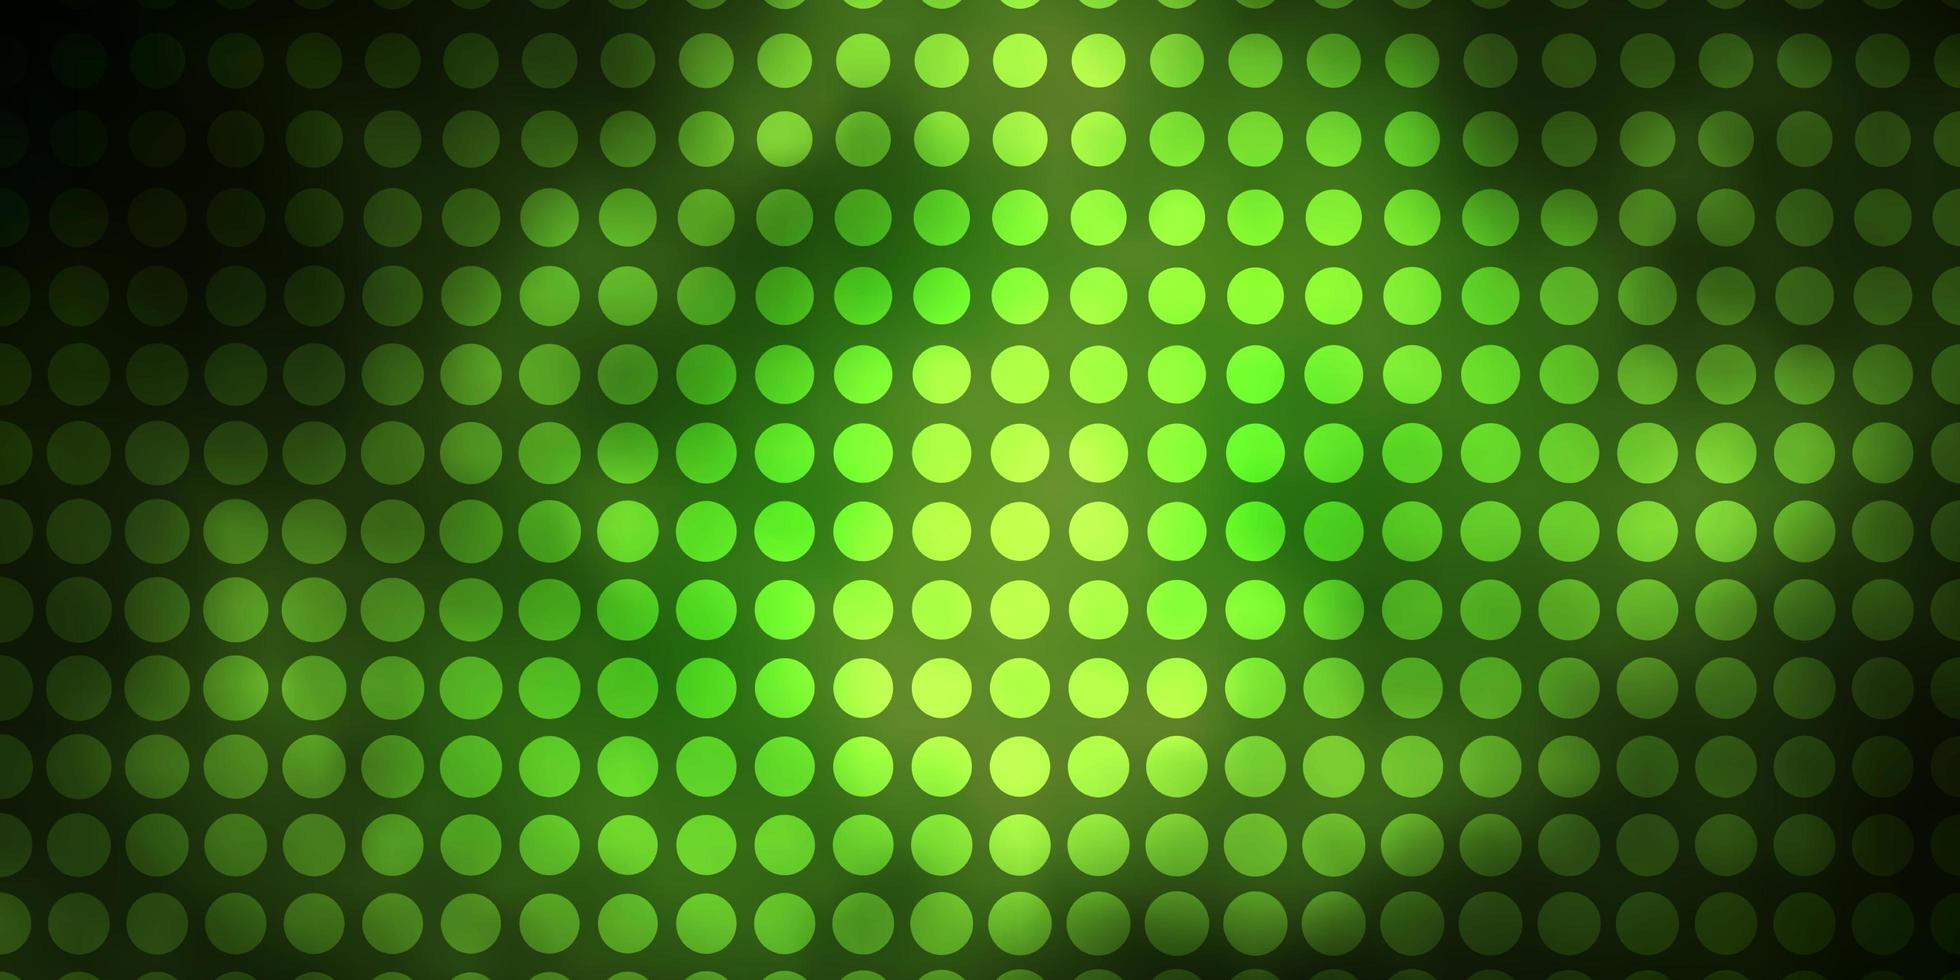 fundo vector verde escuro e amarelo com círculos. projeto decorativo abstrato em estilo gradiente com bolhas. design para seus comerciais.